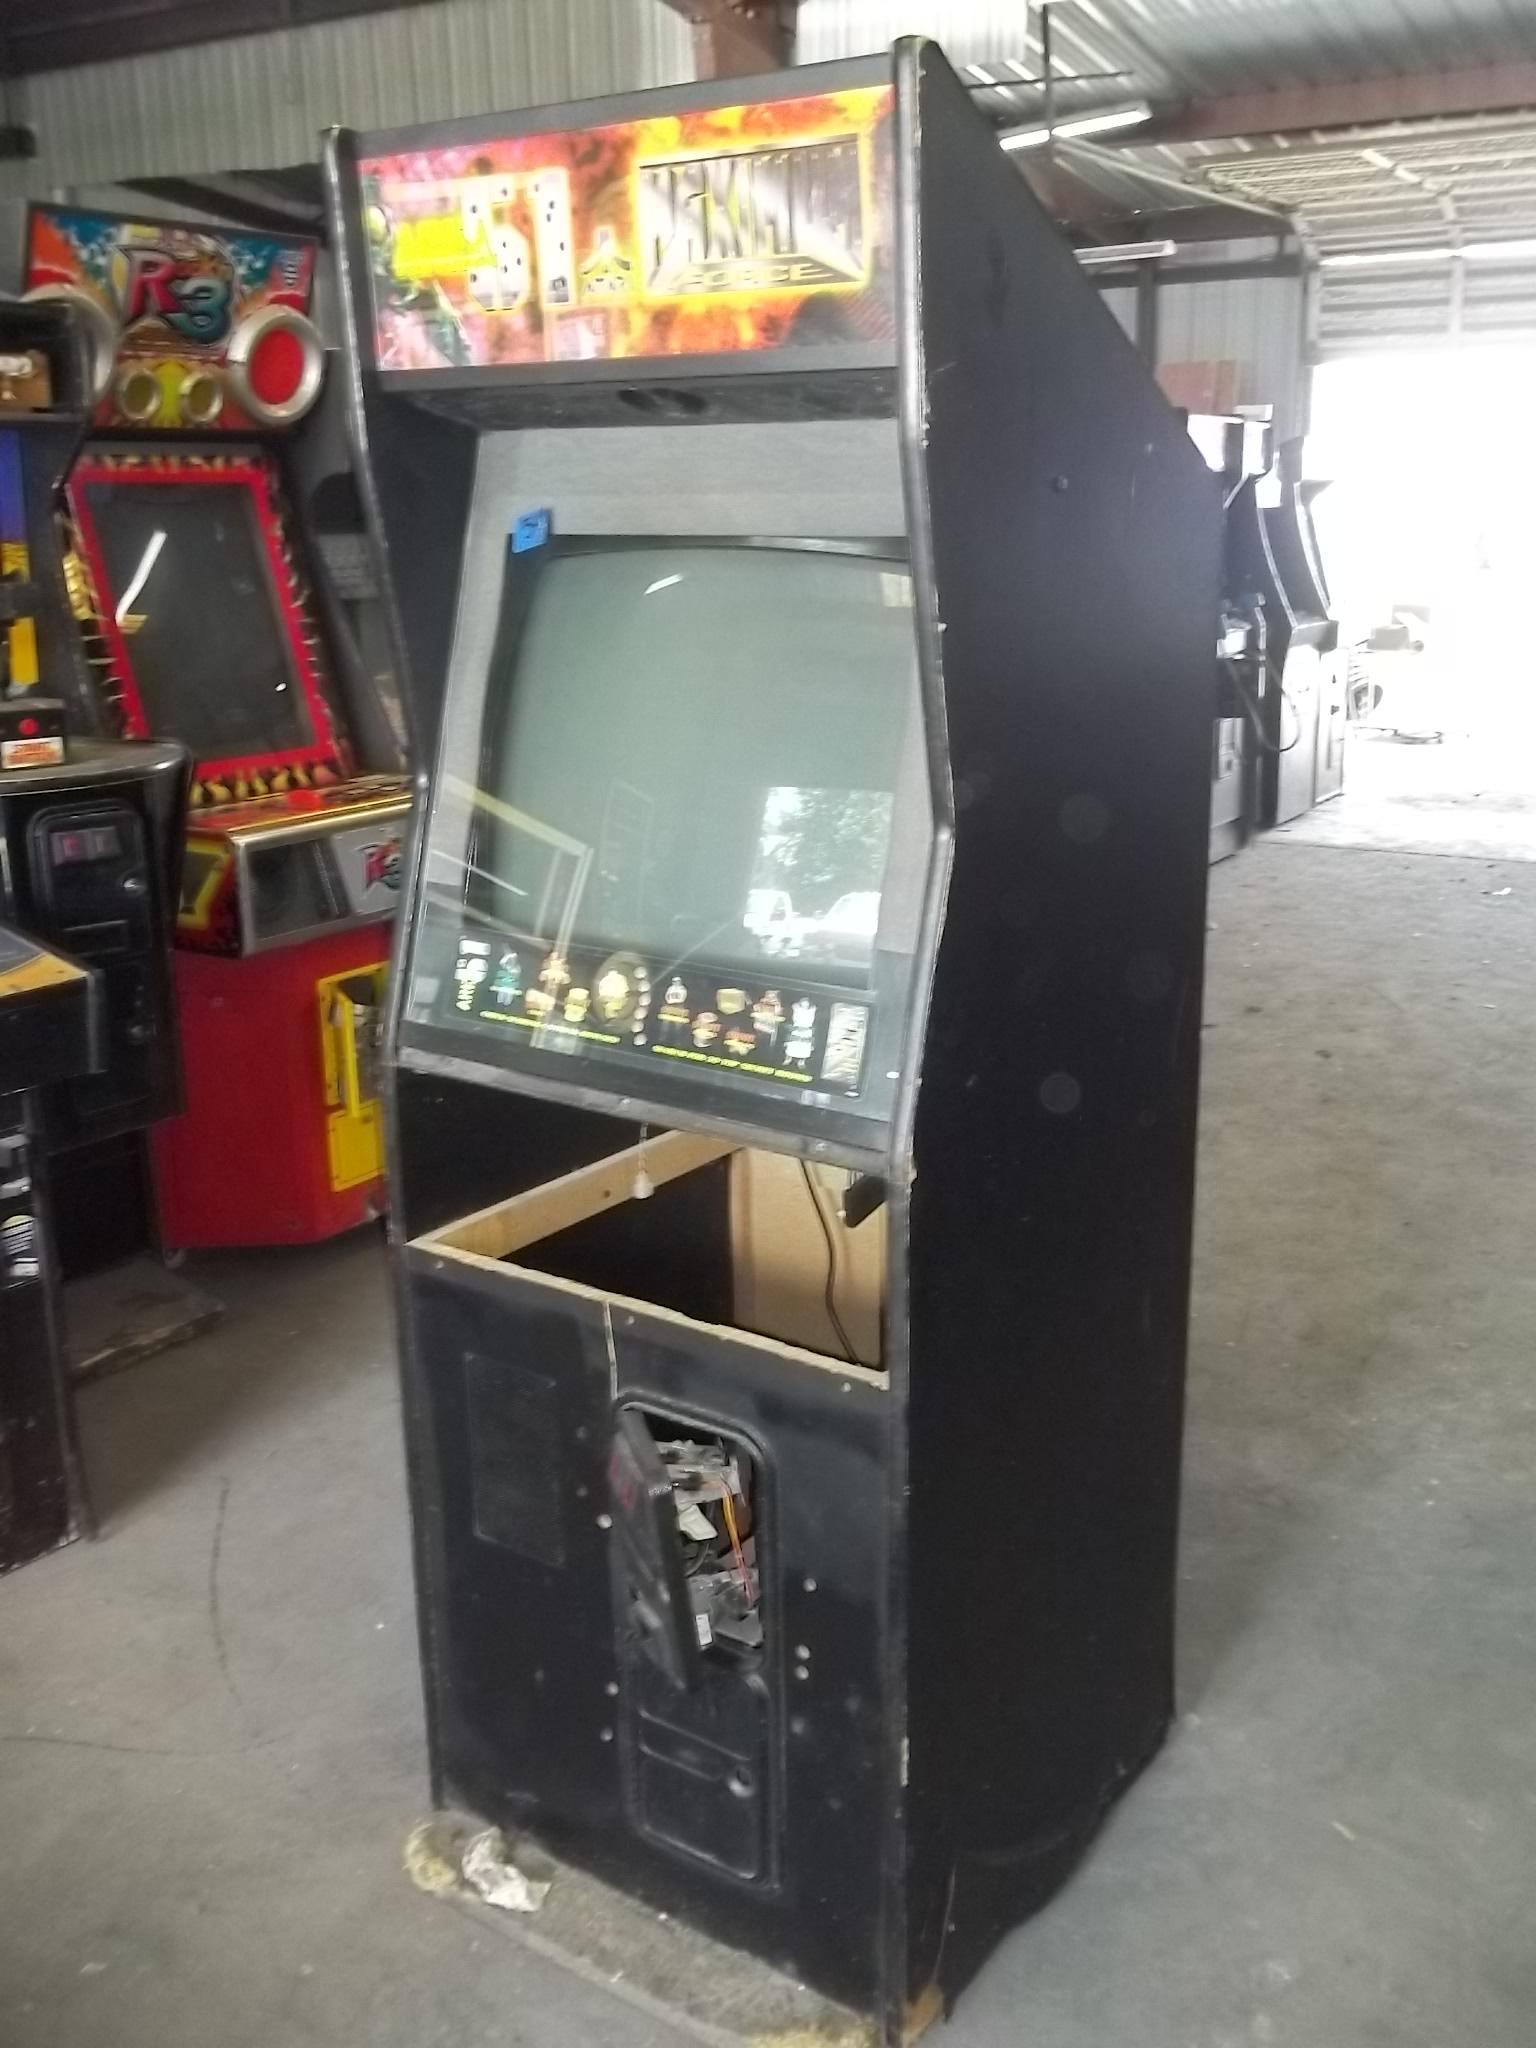 Atari Area 51 Maximum Force Arcade Game